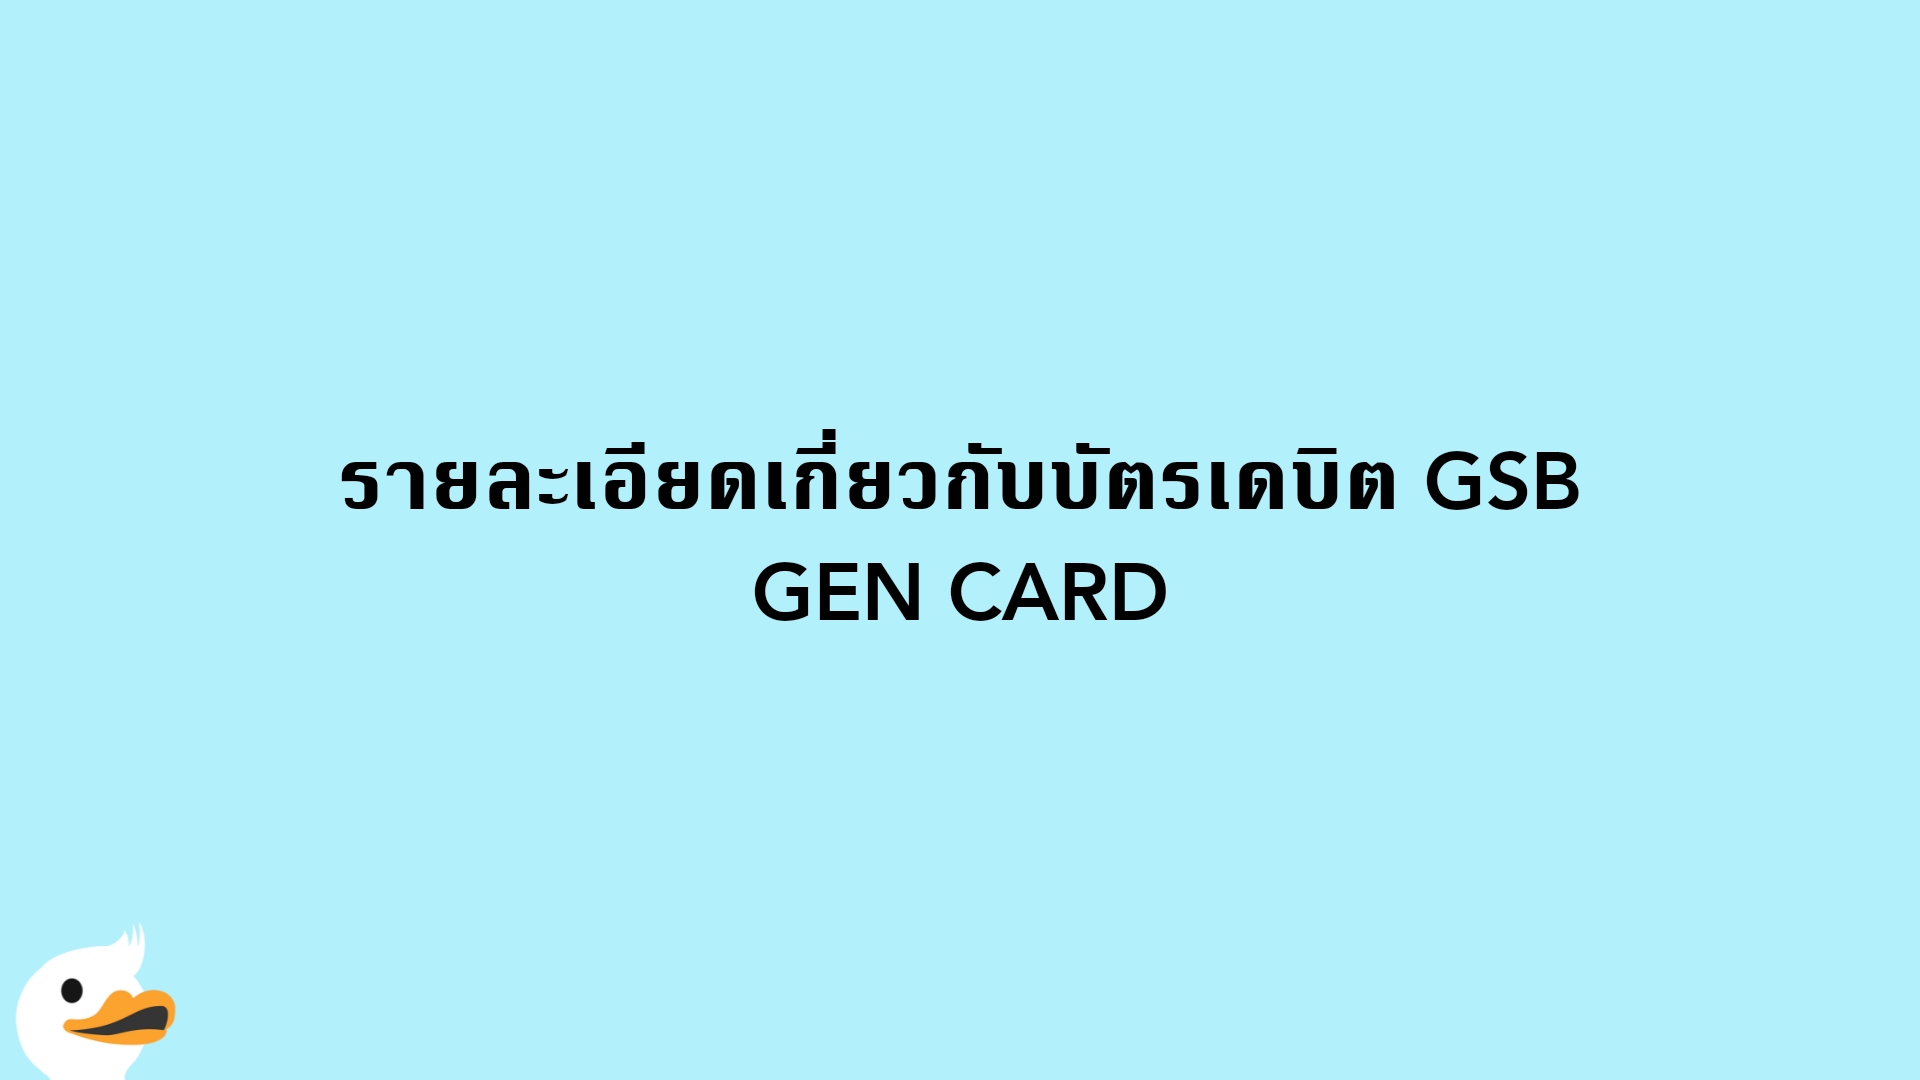 รายละเอียดเกี่ยวกับบัตรเดบิต GSB GEN CARD